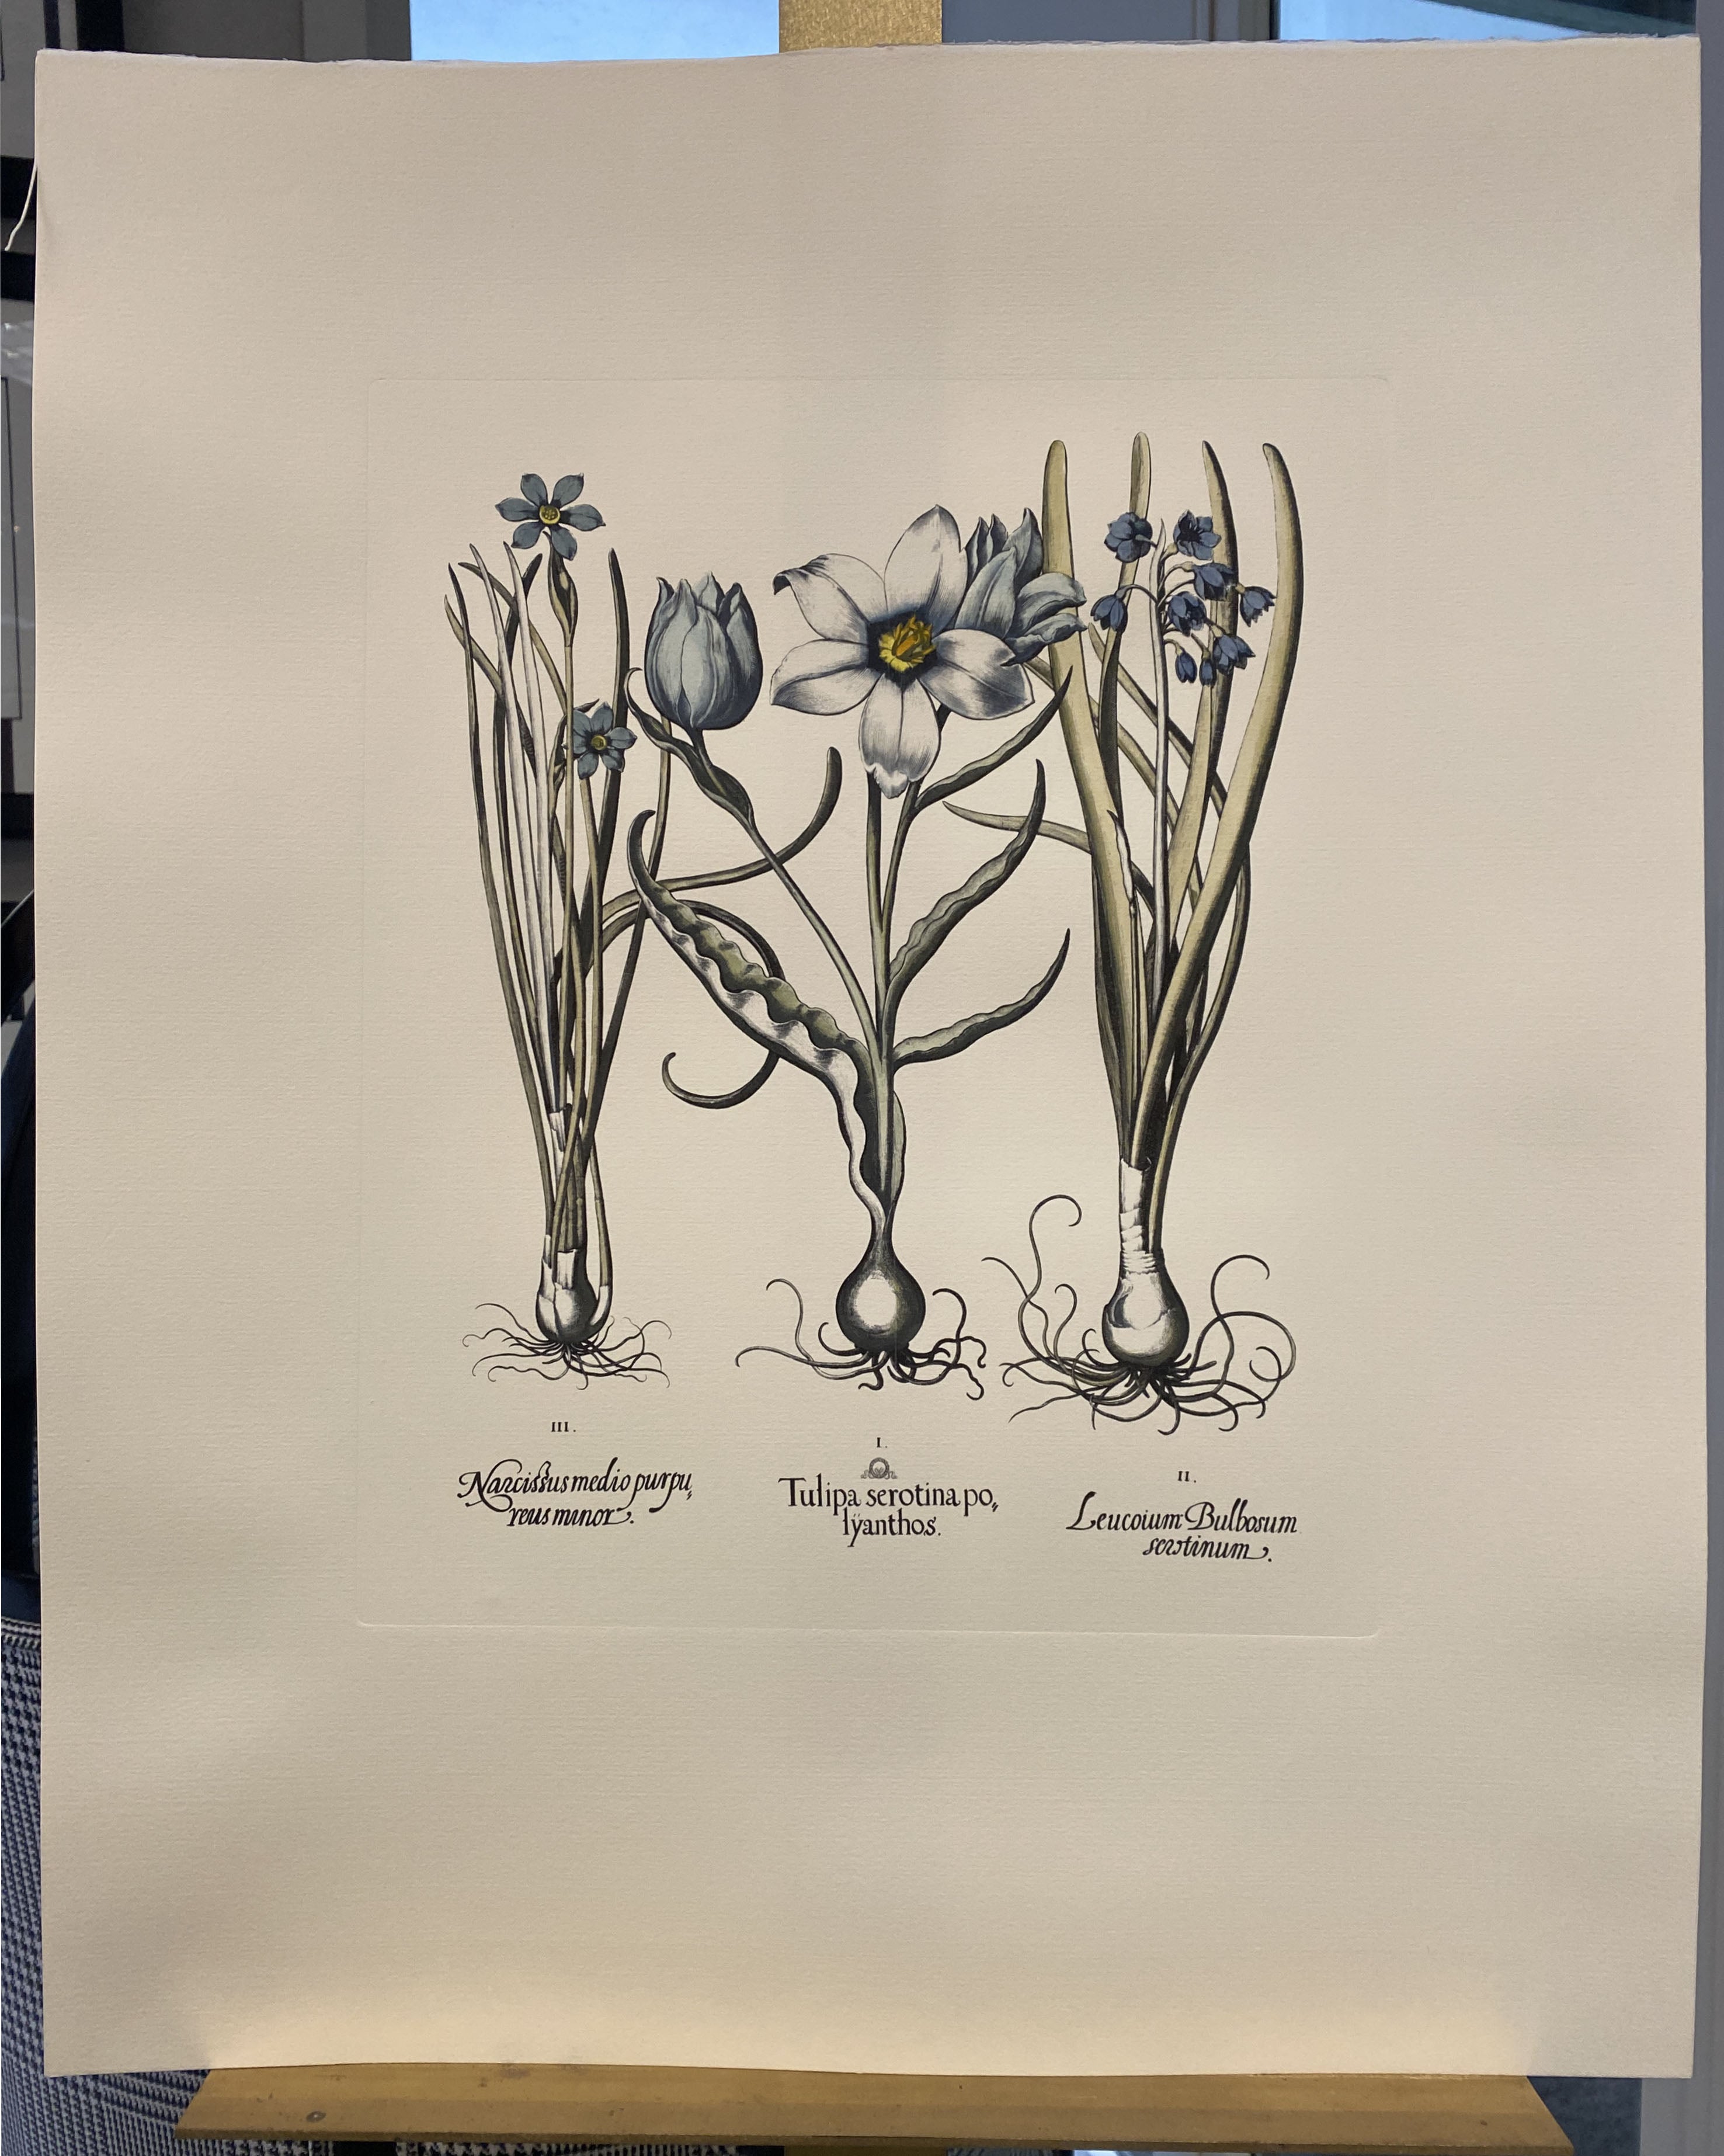 Estampe de la Collection Botanique Bulbacee représentant le Paeonia, enrichie de couleurs bleues et de nuances d'aquarelle.

D'autres imprimés de fleurs Bulbacee sont disponibles pour créer une composition haute en couleur :
- Iris
- Crocus et